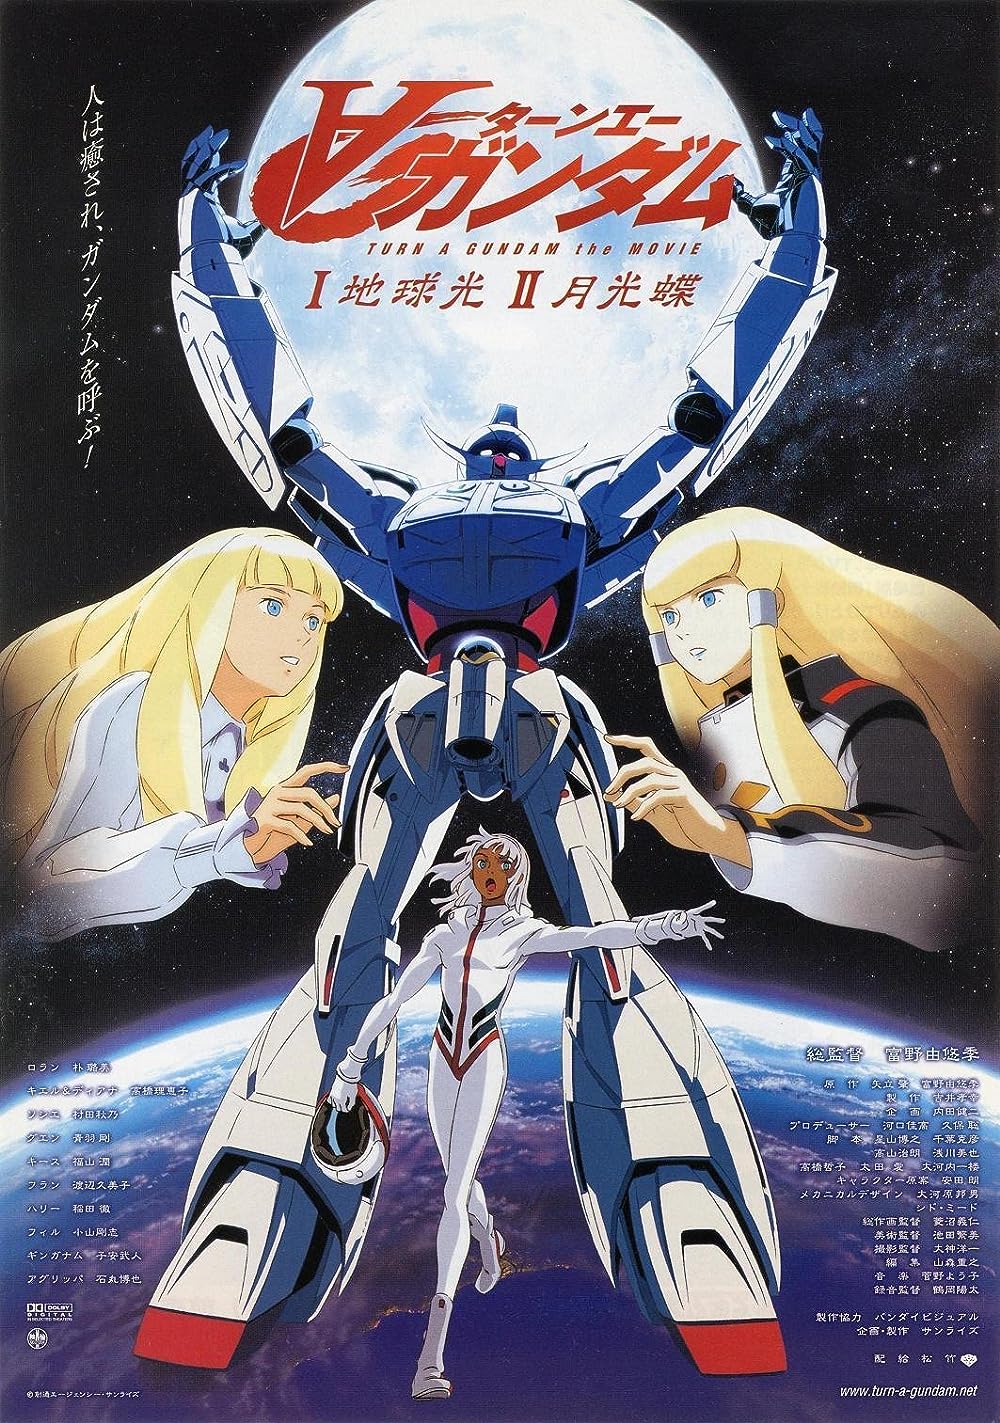 affiche du film Turn A Gundam II: Moonlight Butterfly